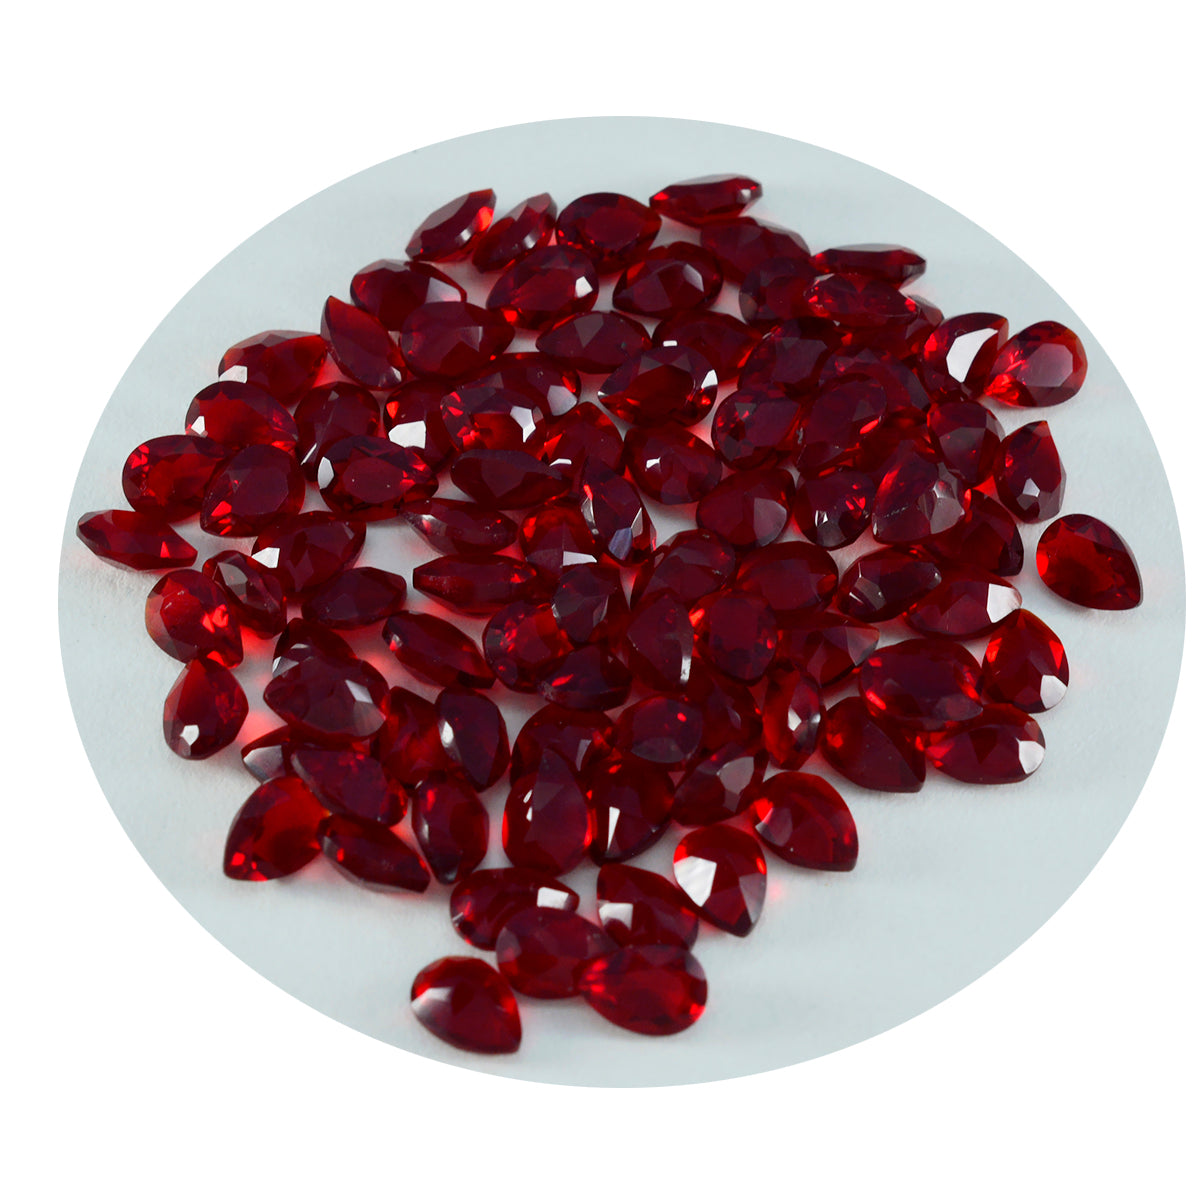 riyogems 1 шт., красный рубин, граненый 3x5 мм, грушевидная форма, сладкий качественный драгоценный камень